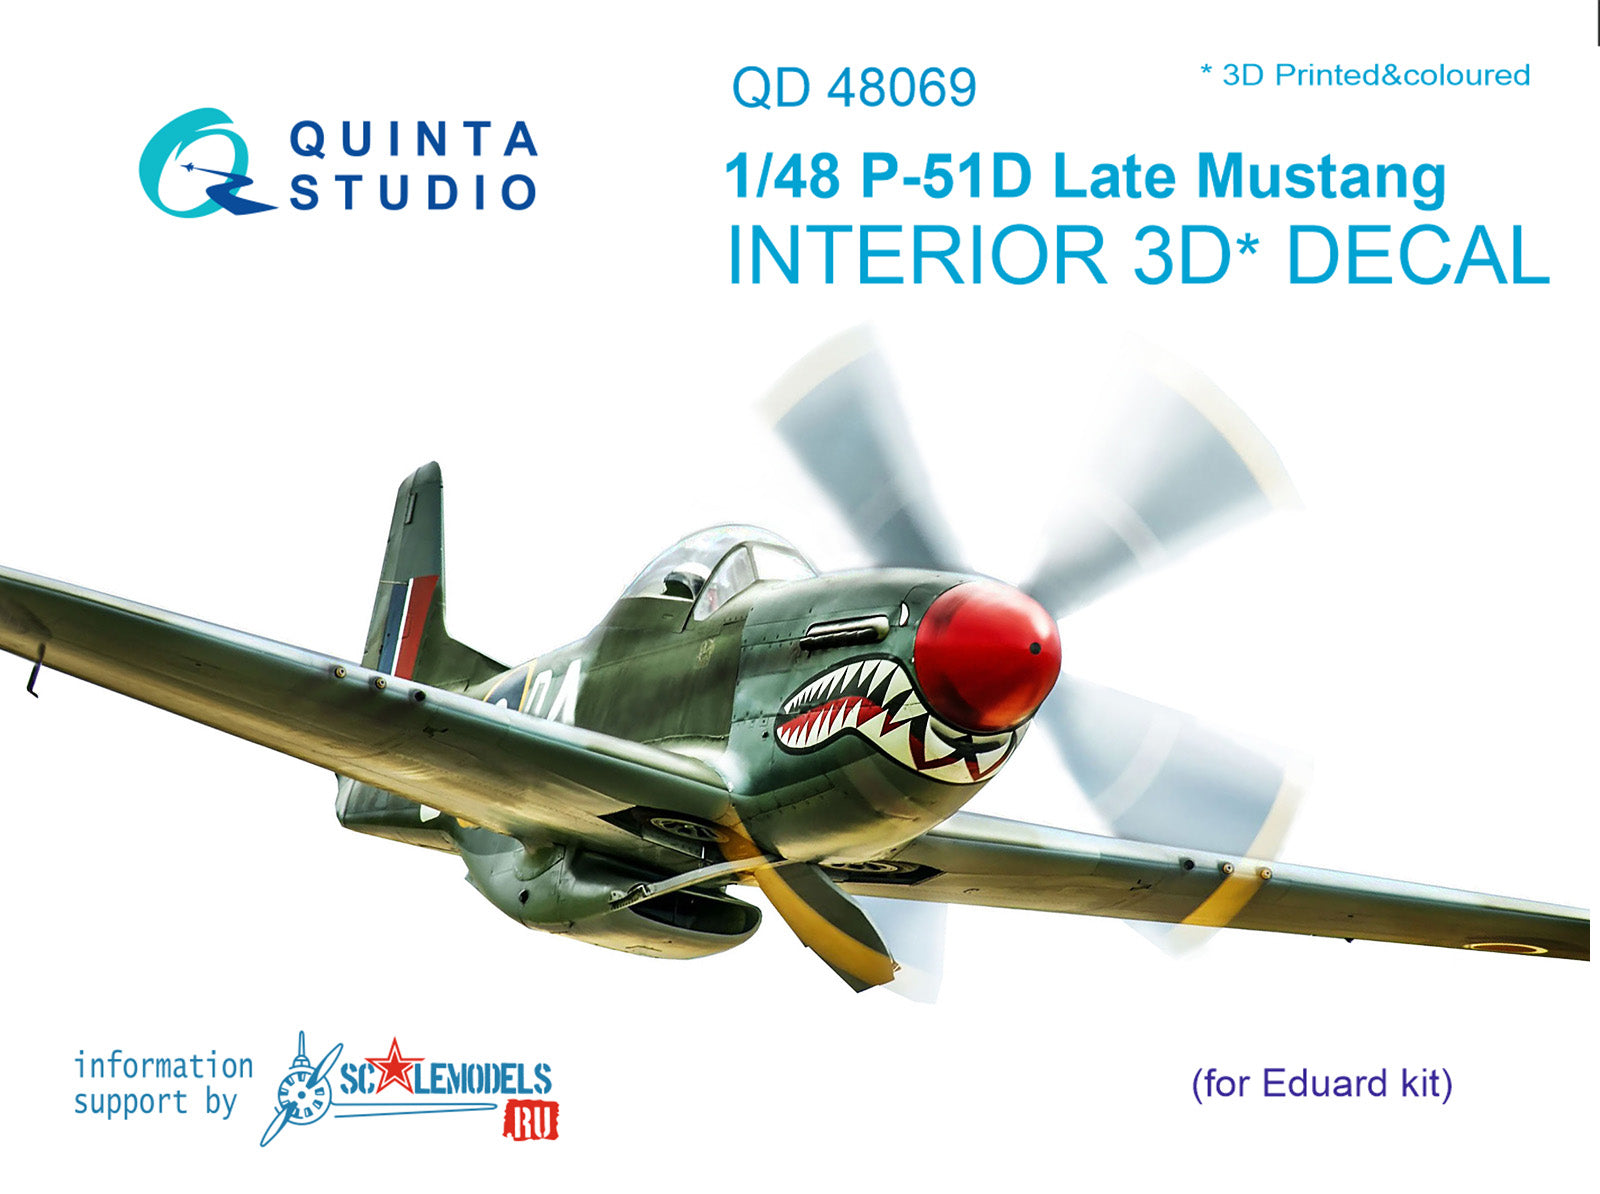 Quinta Studio - 1/48 P-51D (Late) QD48069 for Eduard kit